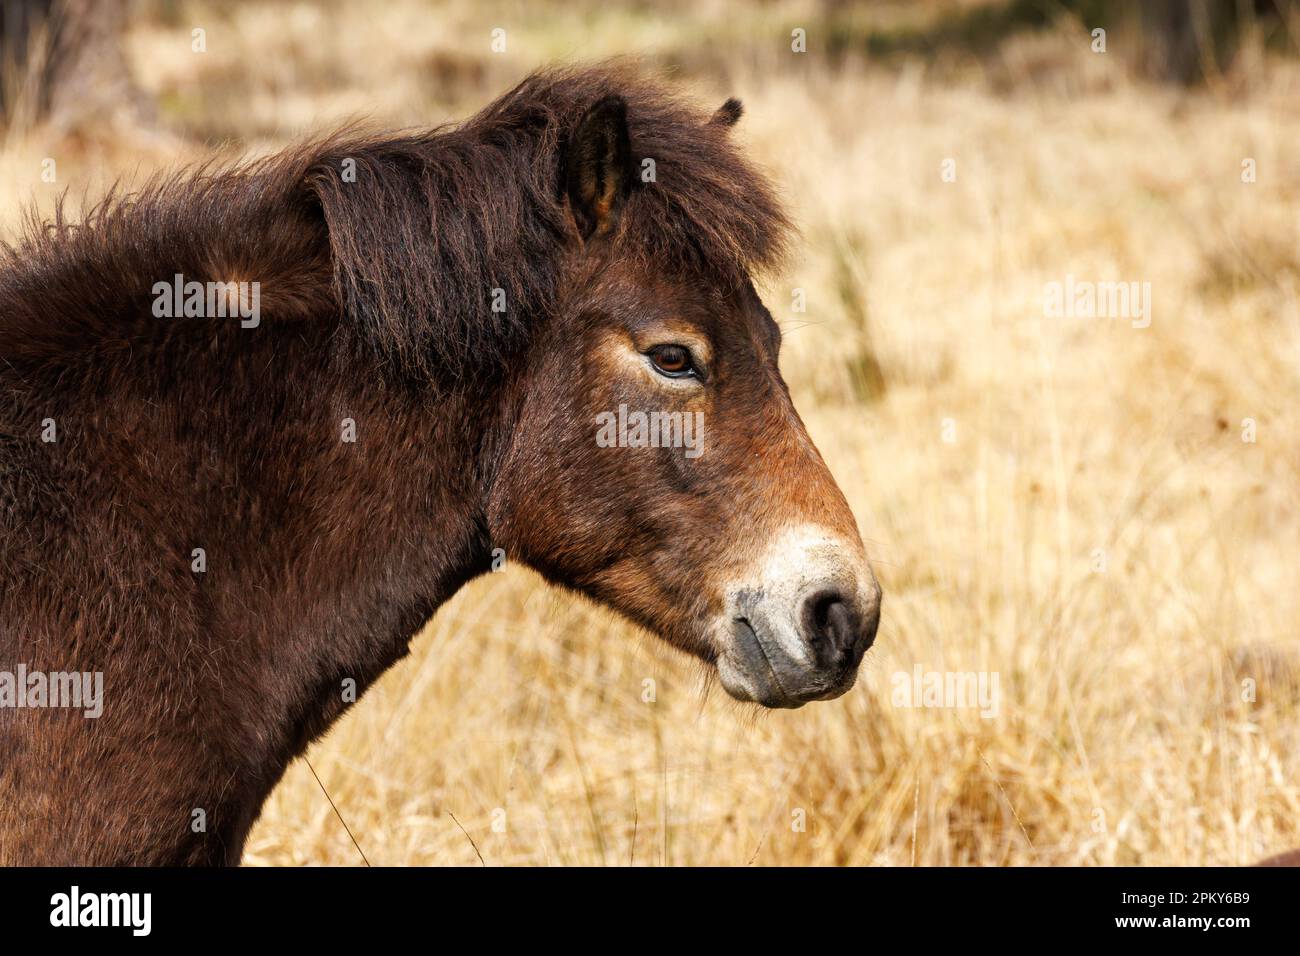 Exmoor pony, Sussex, UK Stock Photo